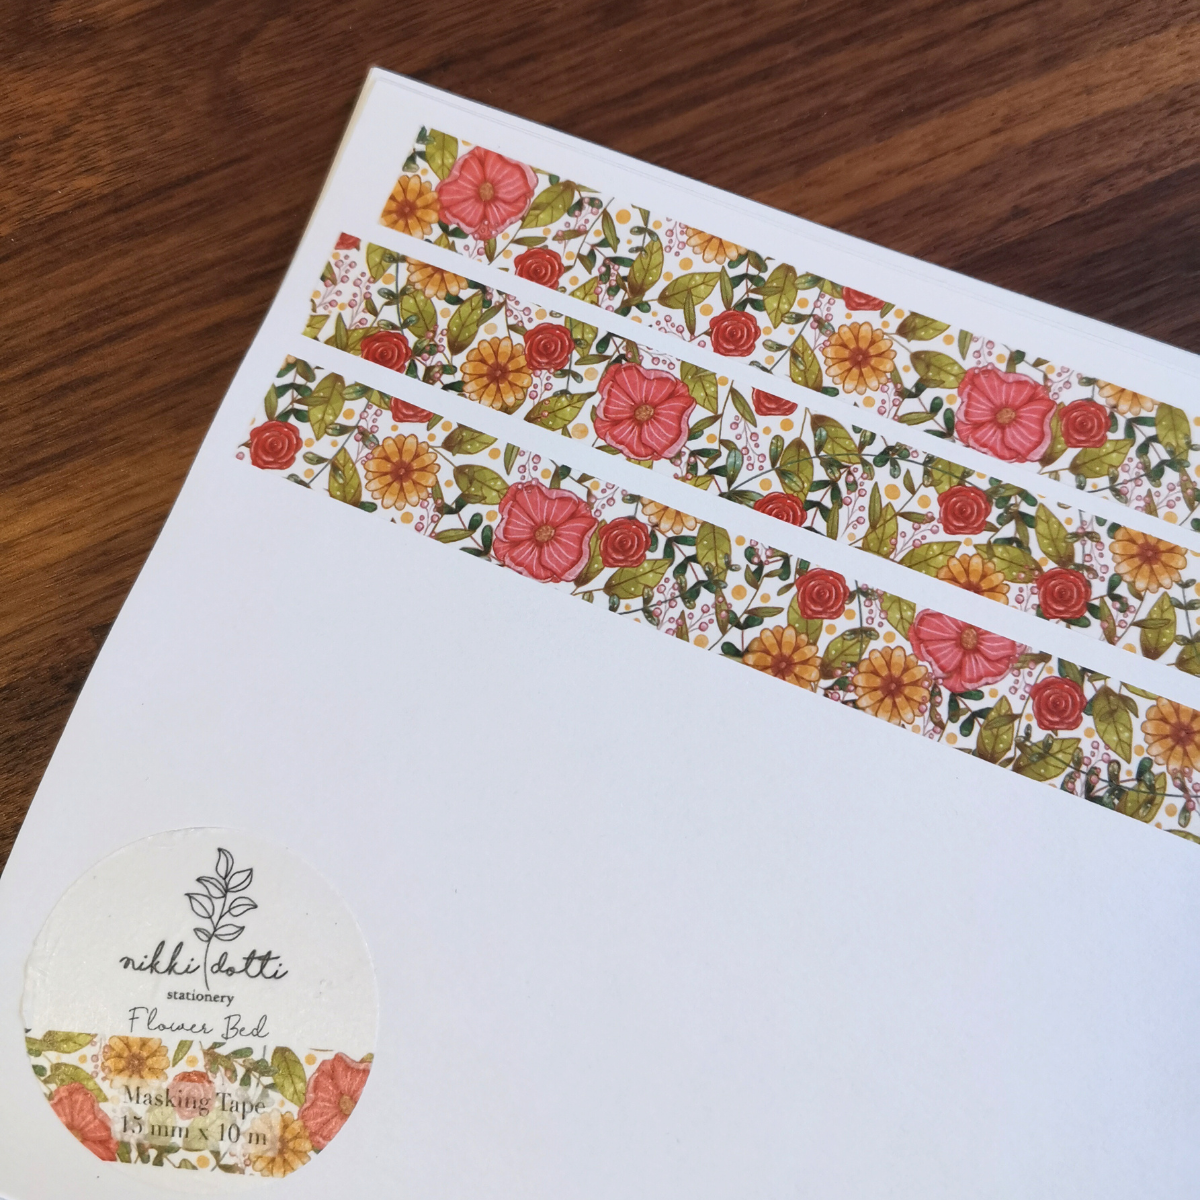 Ce masking tape est orné d'un motif délicat de fleurs colorées. Son design intemporel ajoutera une touche de charme à vos créations : décorer vos emballages cadeaux, vos cartes de vœux, vos carnets de notes…